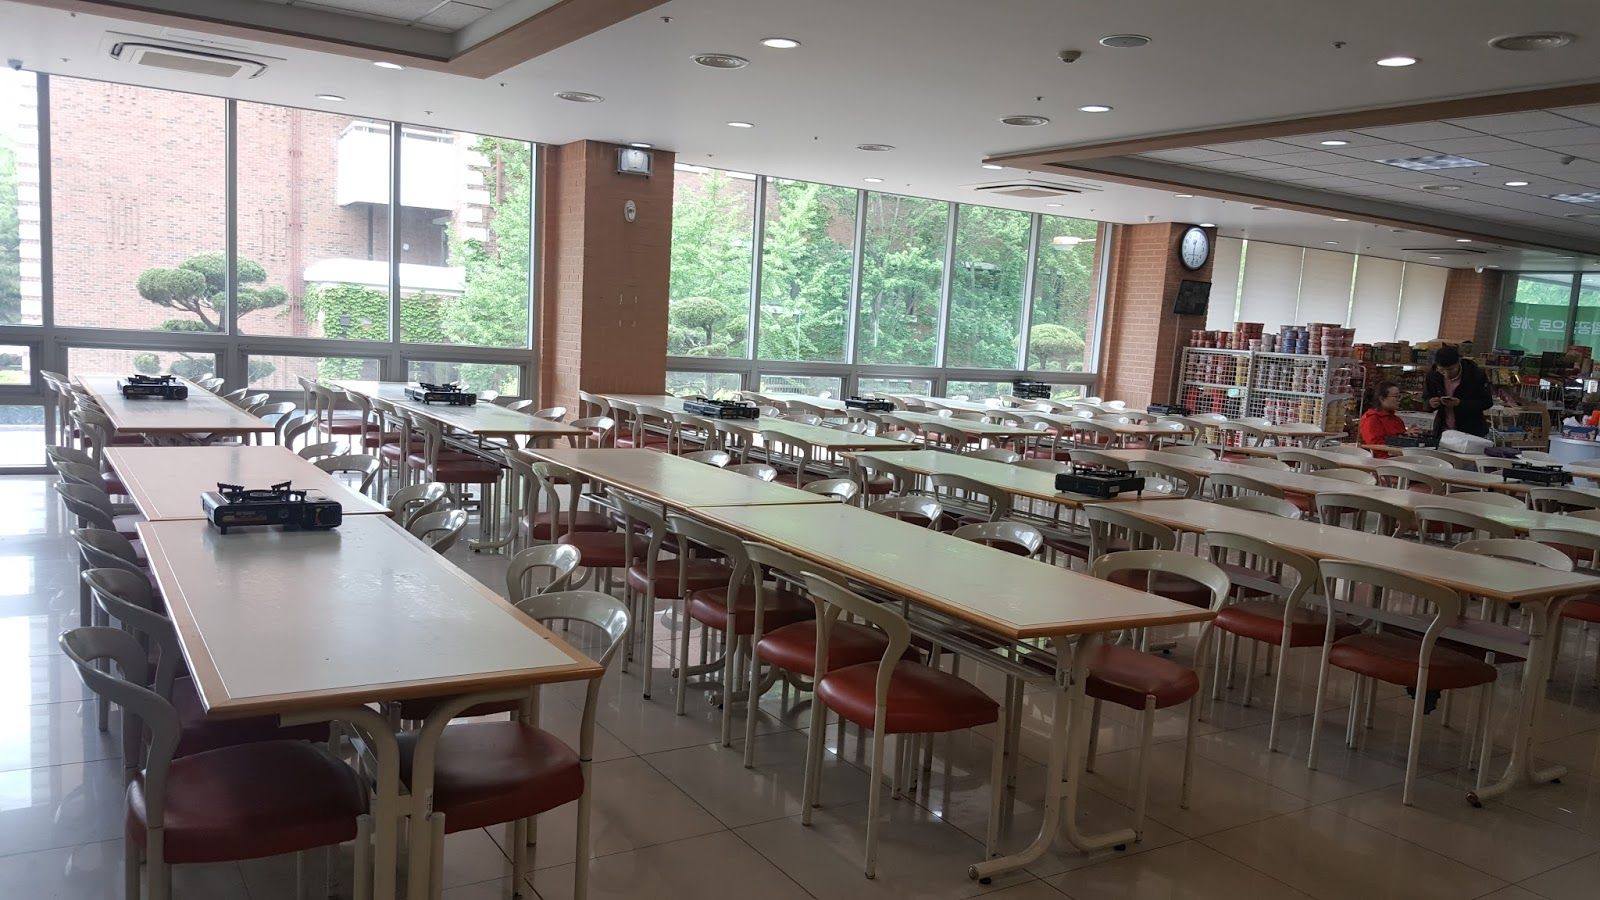 Guru Kashi University Cafeteria / Mess